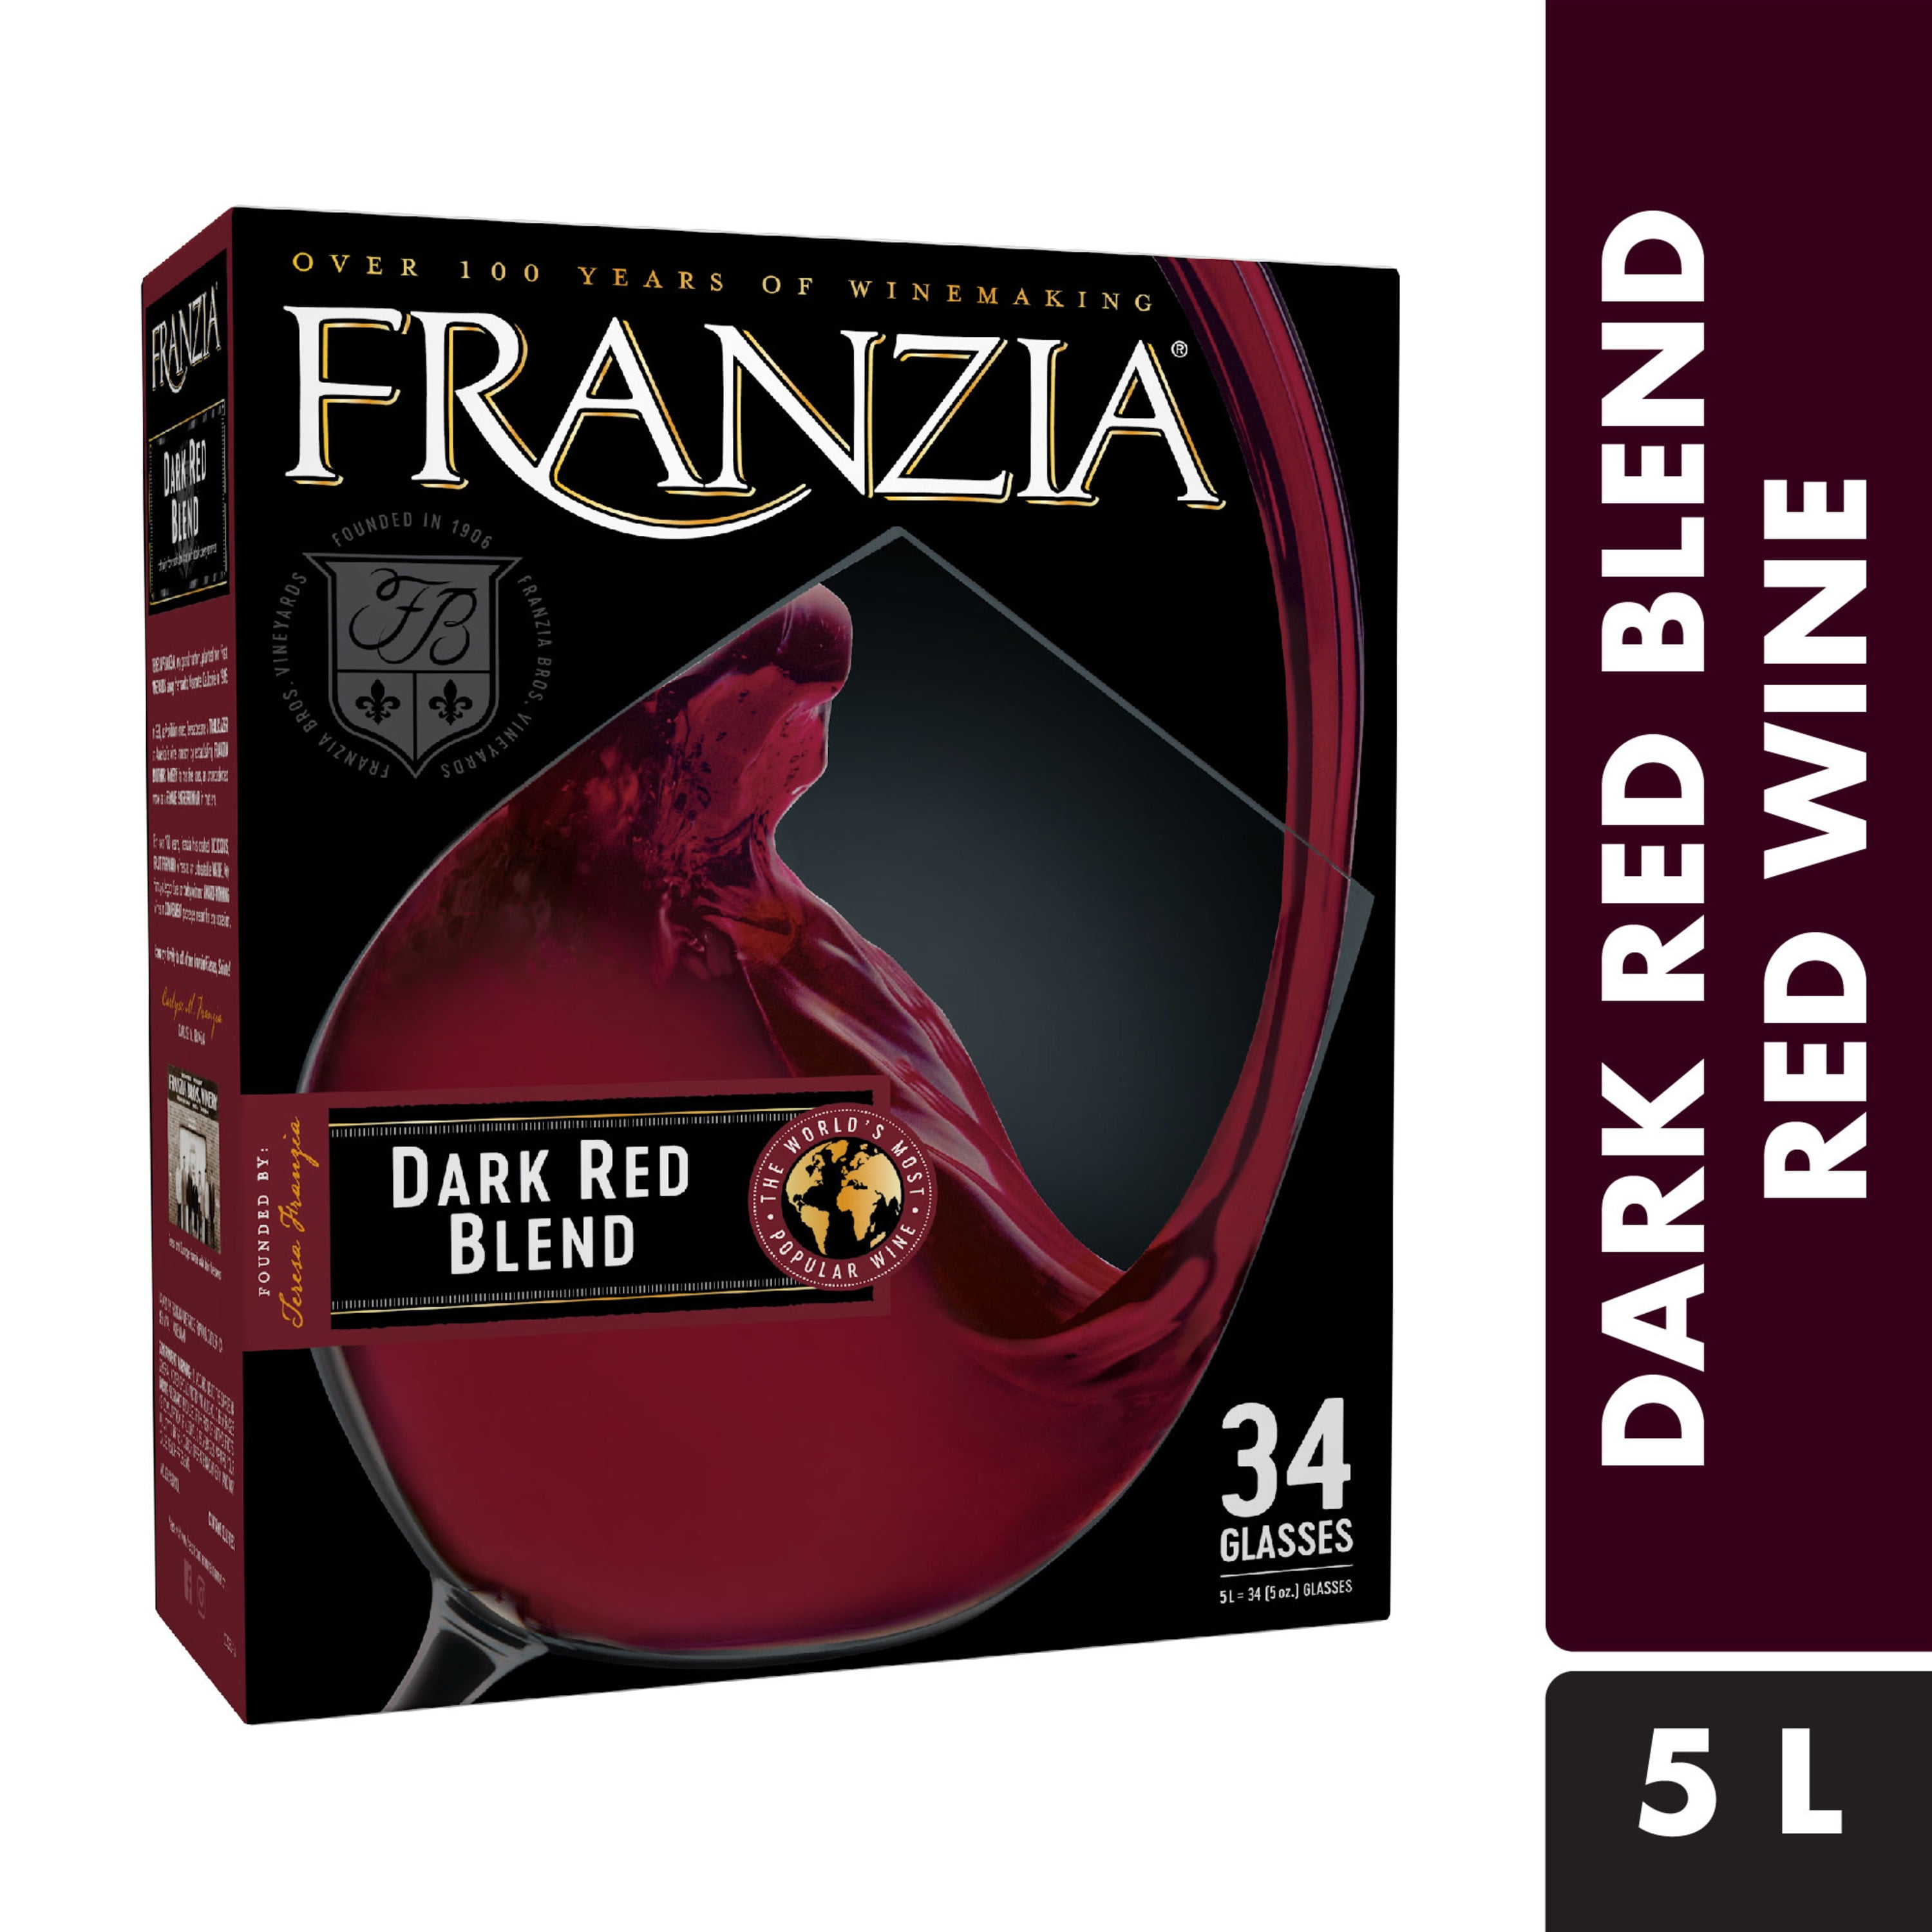 franzia-dark-red-red-wine-5-liter-walmart